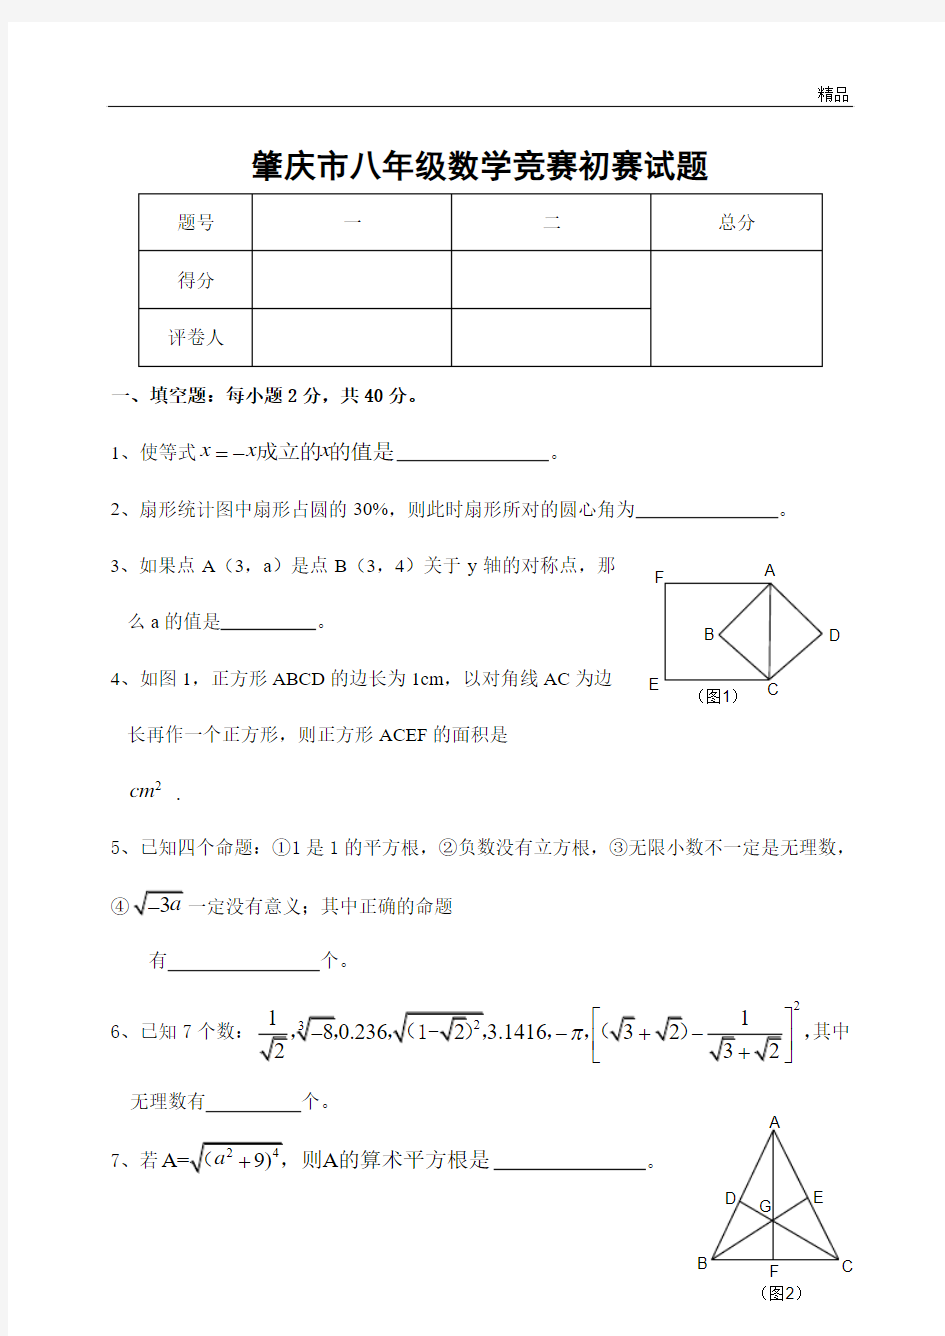 肇庆市八年级数学竞赛初赛试题(含答案)